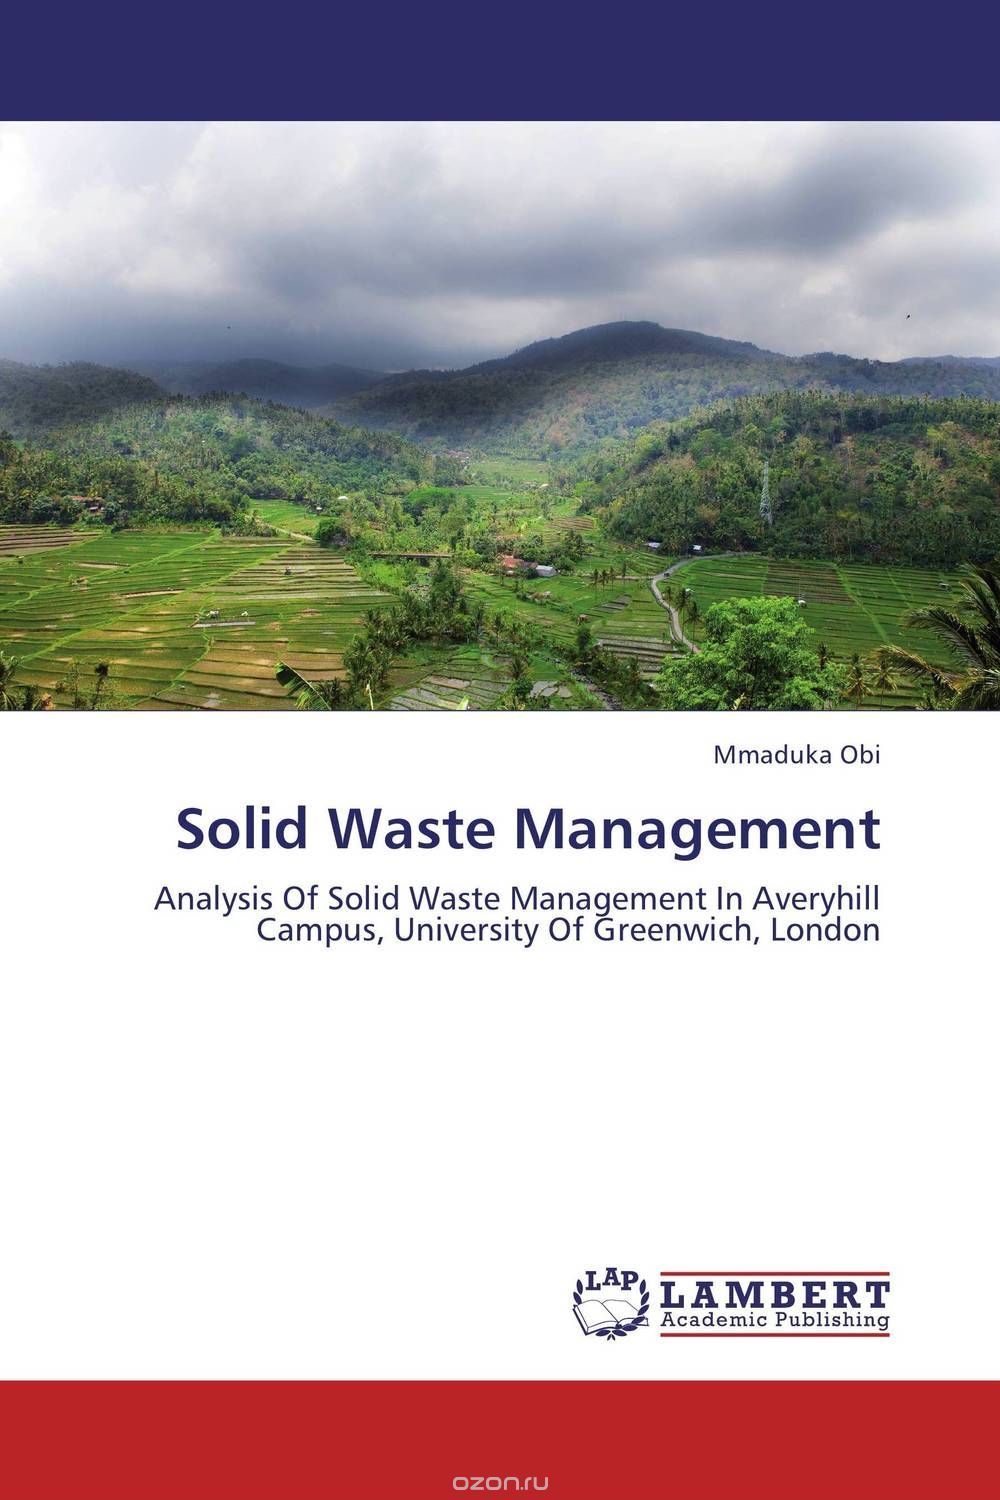 Скачать книгу "Solid Waste Management"